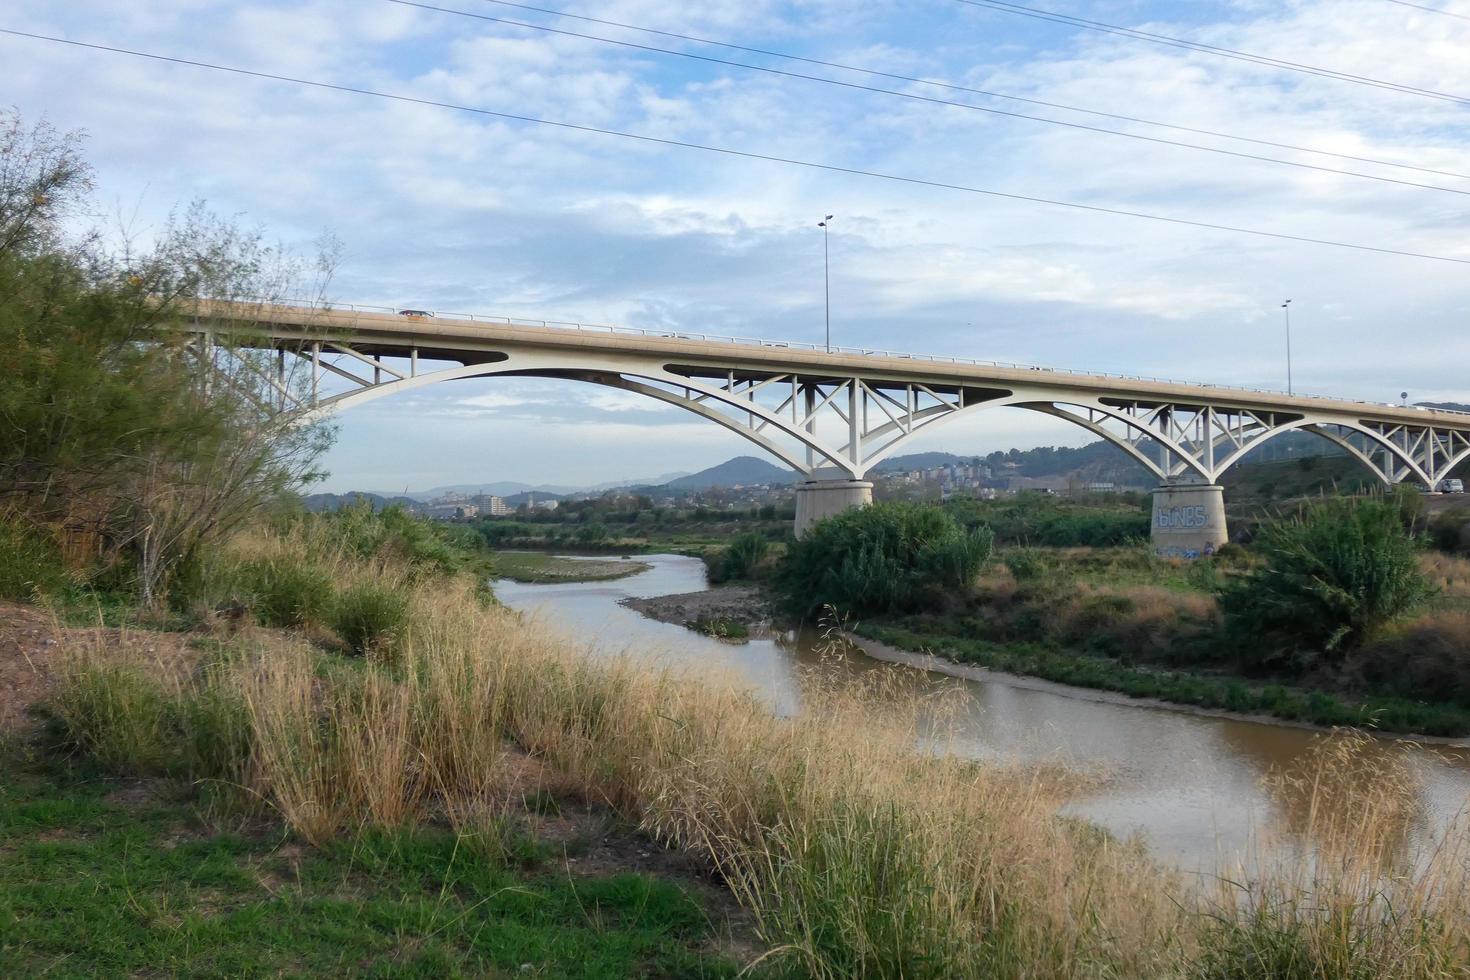 puente sobre el río llobregat, obra de ingeniería para el paso de coches, camiones y autobuses. foto